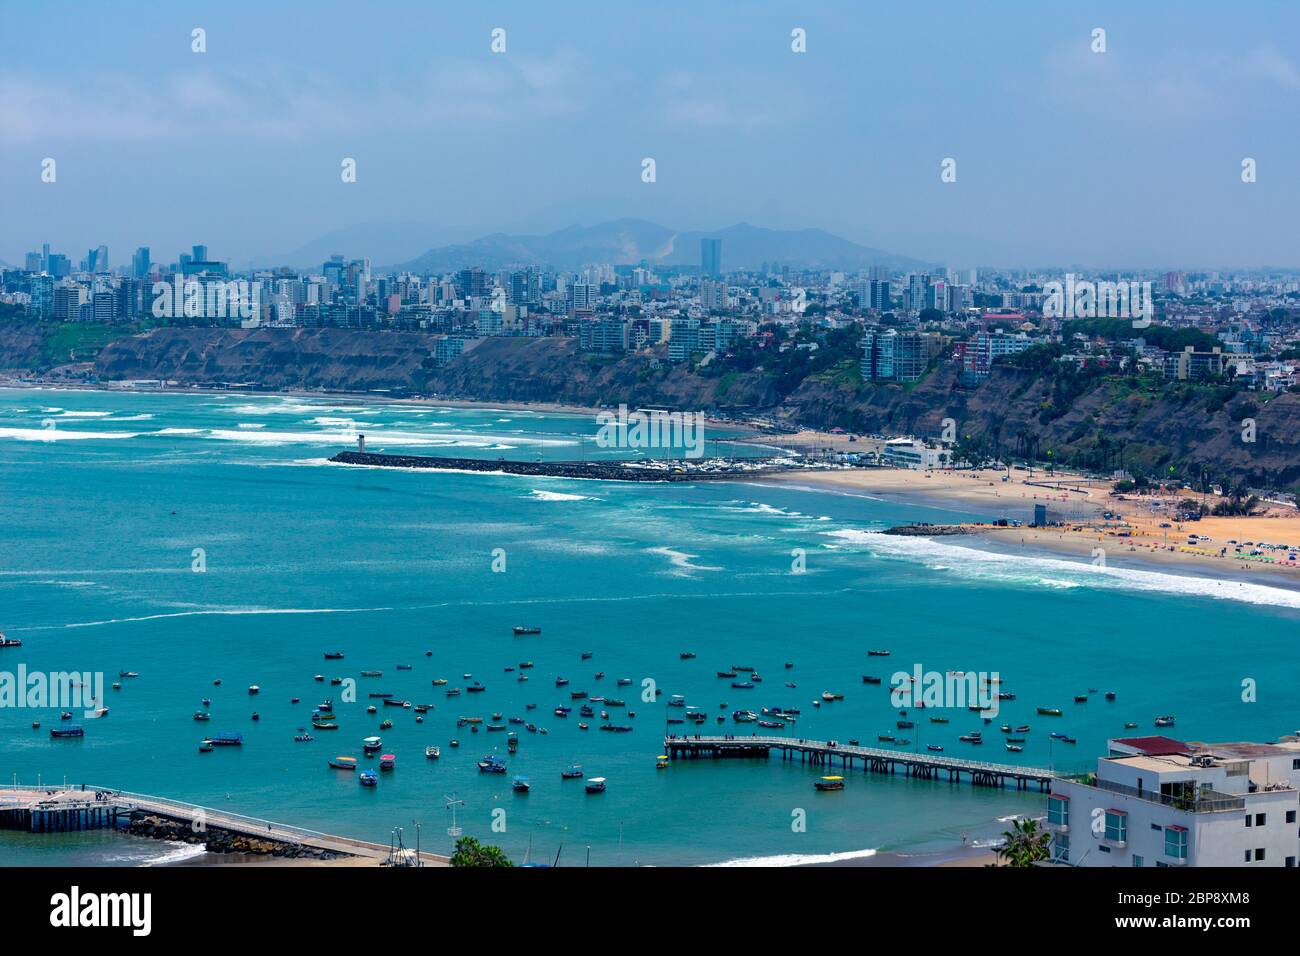 Luftaufnahme des Strandes in der Stadt Lima, Peru. Einige Docks und Boote auf dem blauen Meer Stockfoto